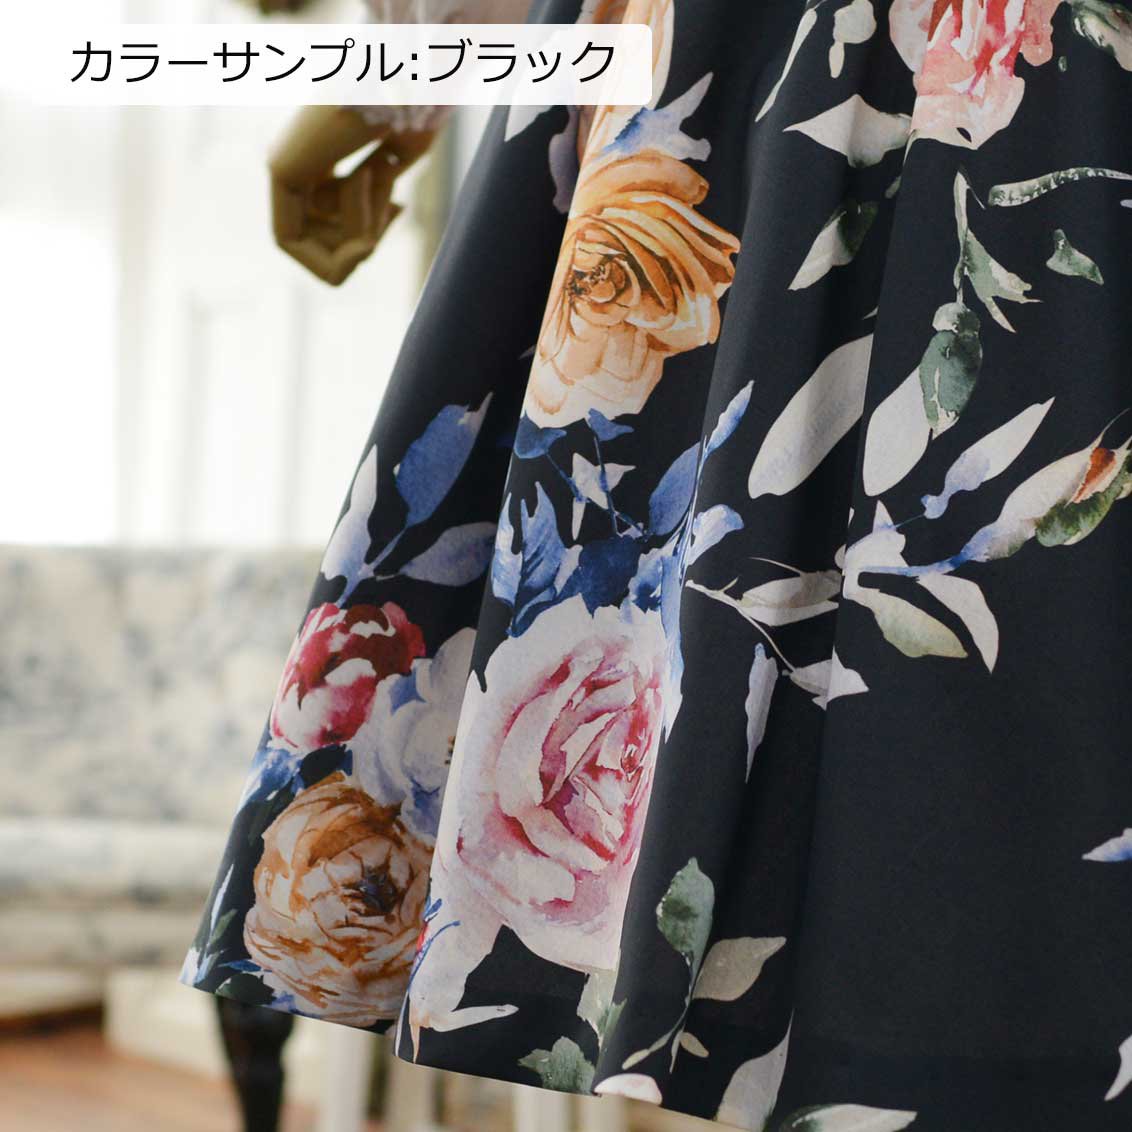 ROSA BIANCA online shop= ローズガーデンのスカート =